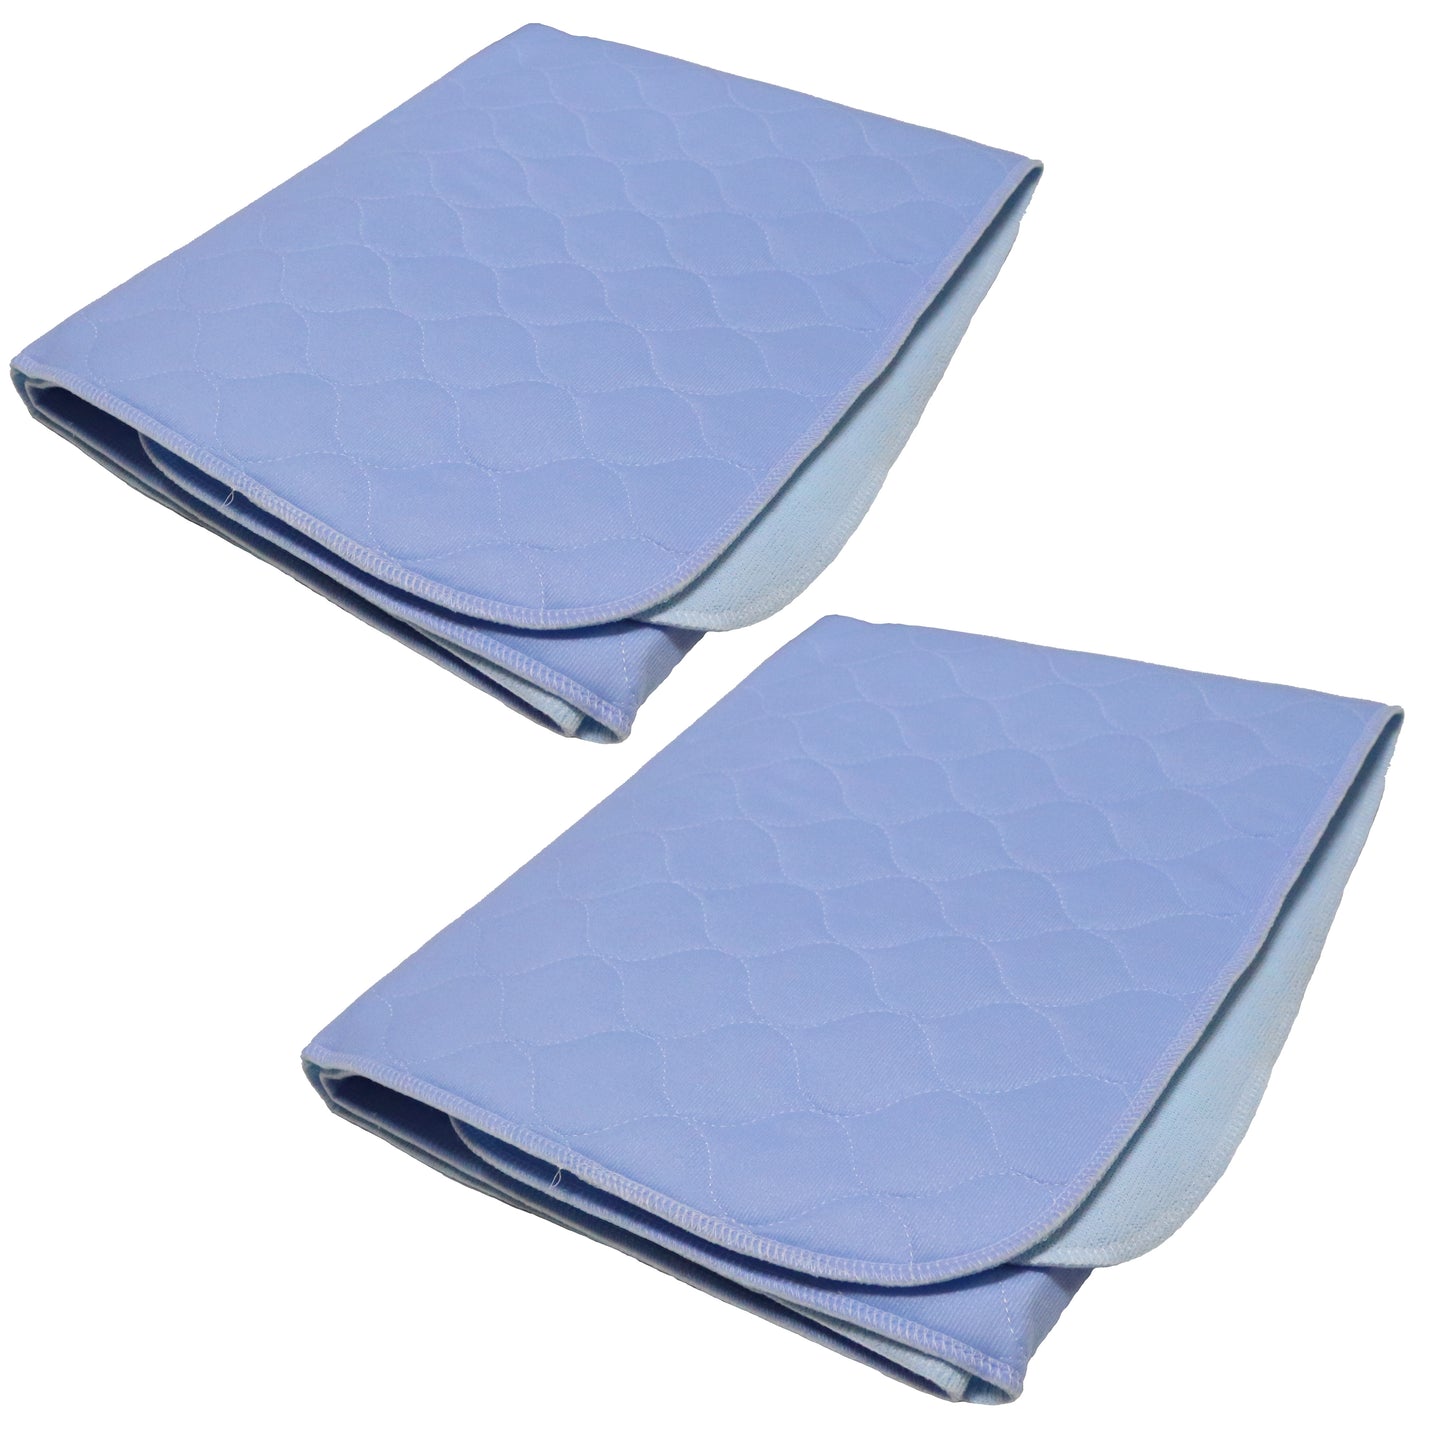 Bedecor Doppelpack wasserdichte Waschbare saugfähige Inkontinenz Unterlage  70 x 90 cm, wasserdichte Inkontinenz Matratzenauflage (Blau)